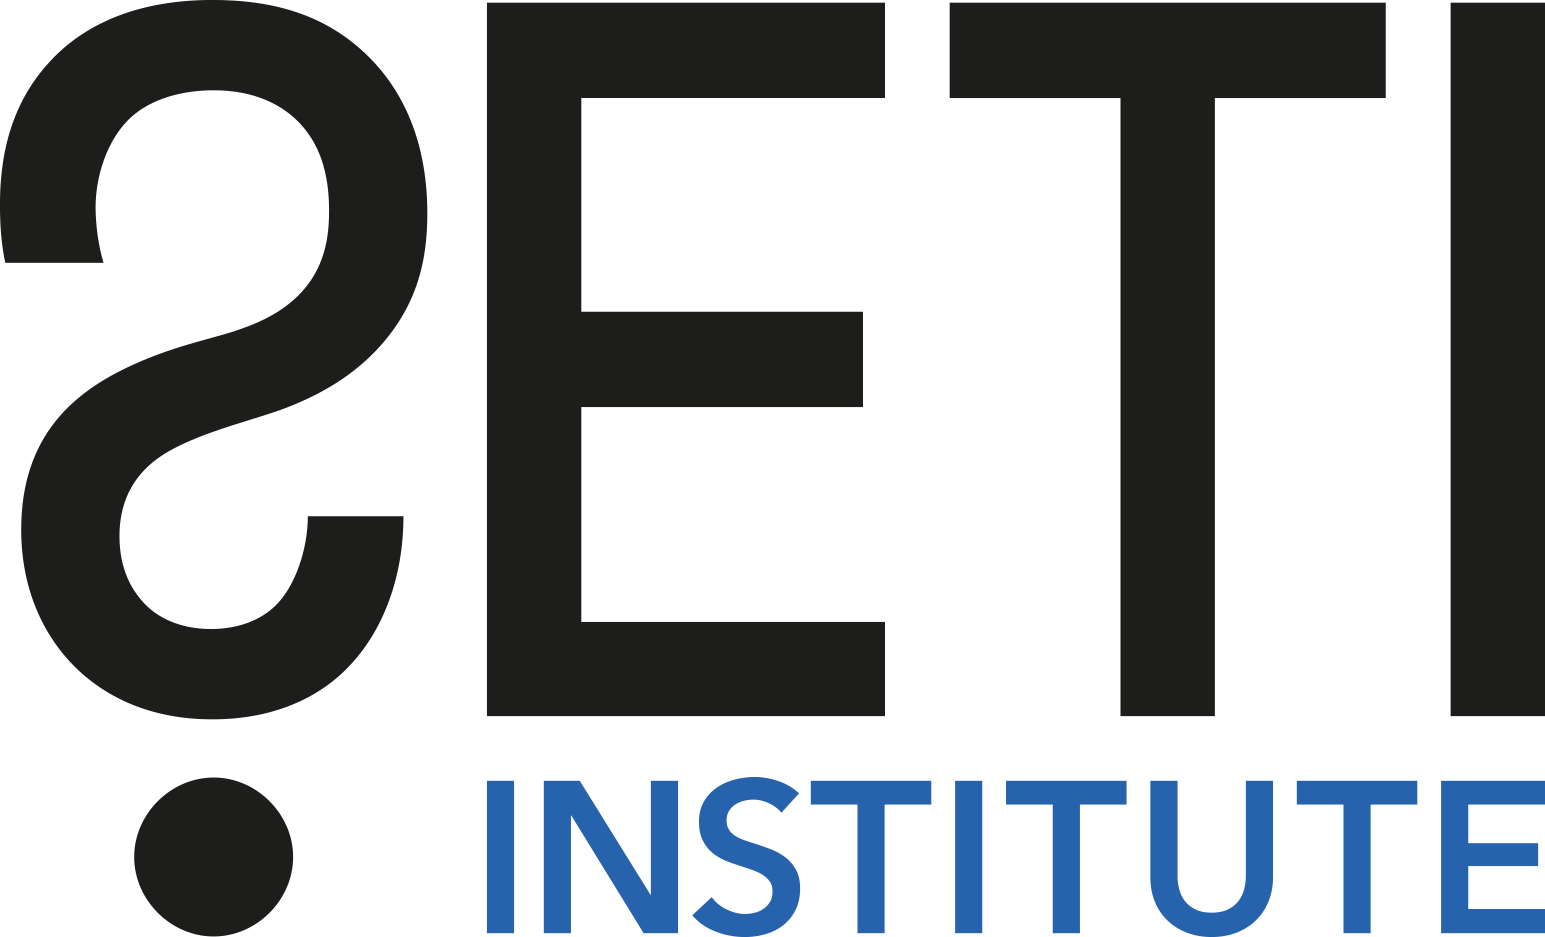 SETI Institute logo.